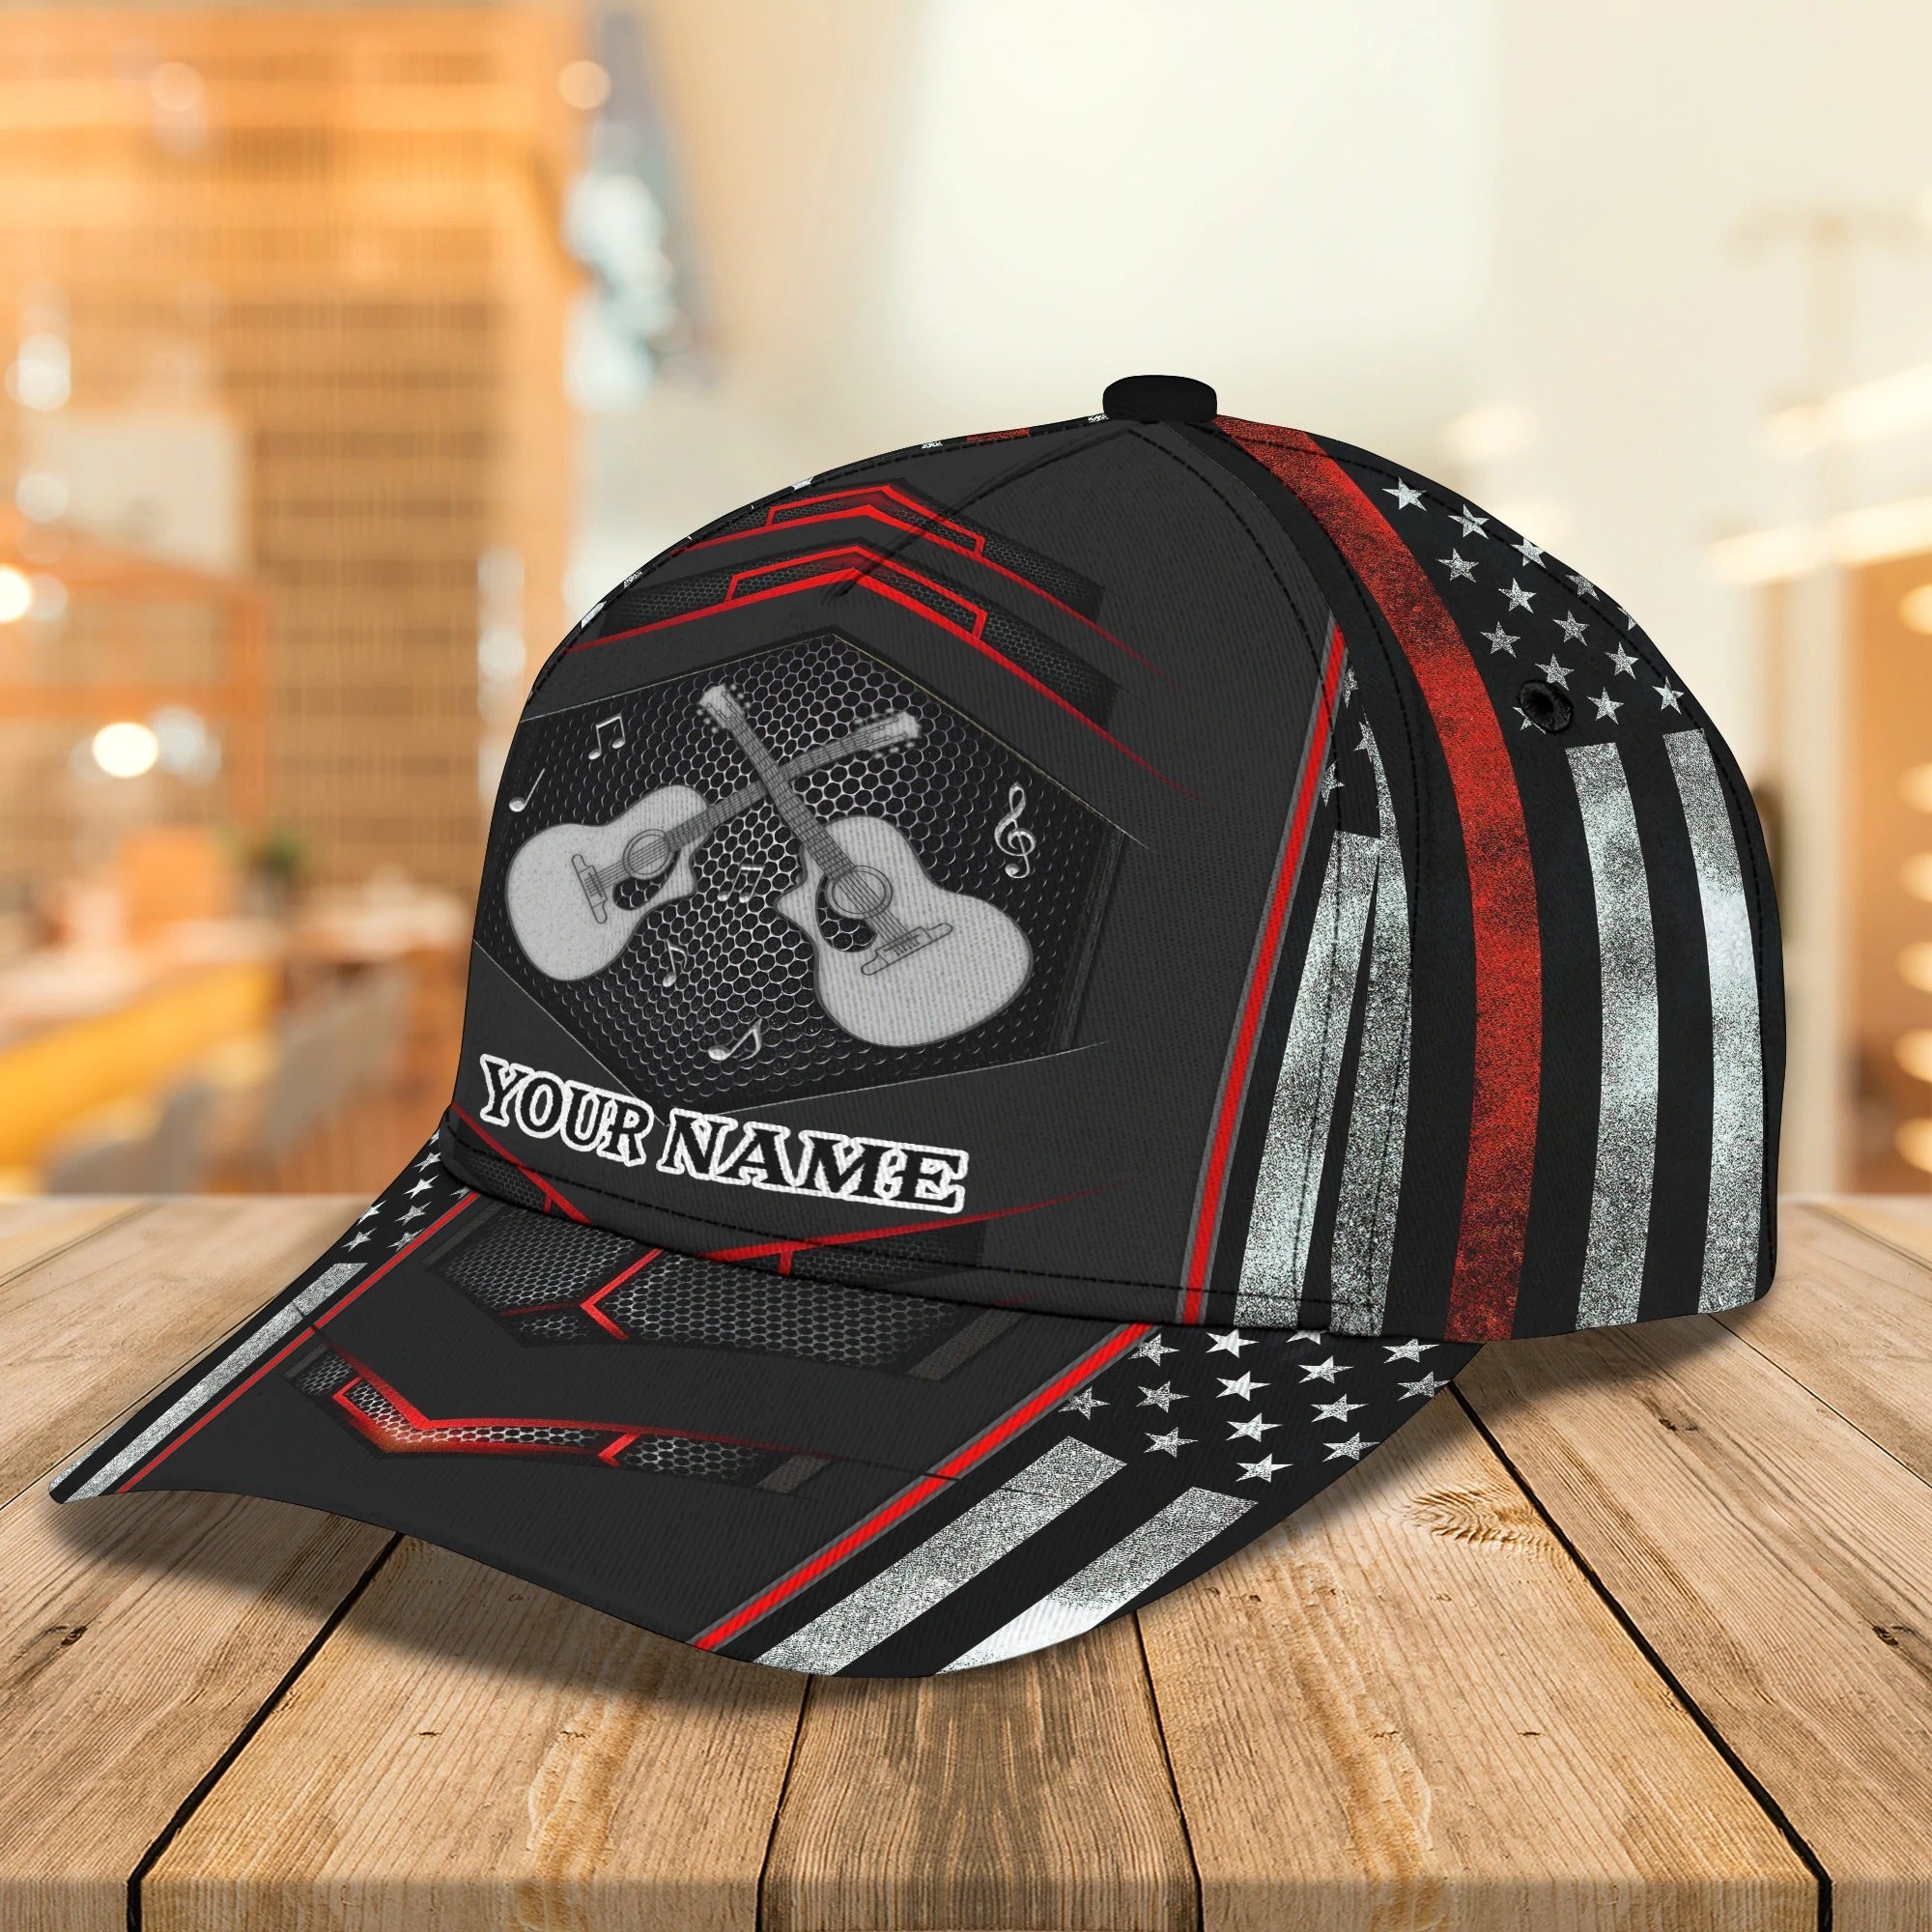 Personalized Beautiful Guitar Full Print Cap Hat For Adult/ Colorful Classic 3D Guitar Cap For Musican